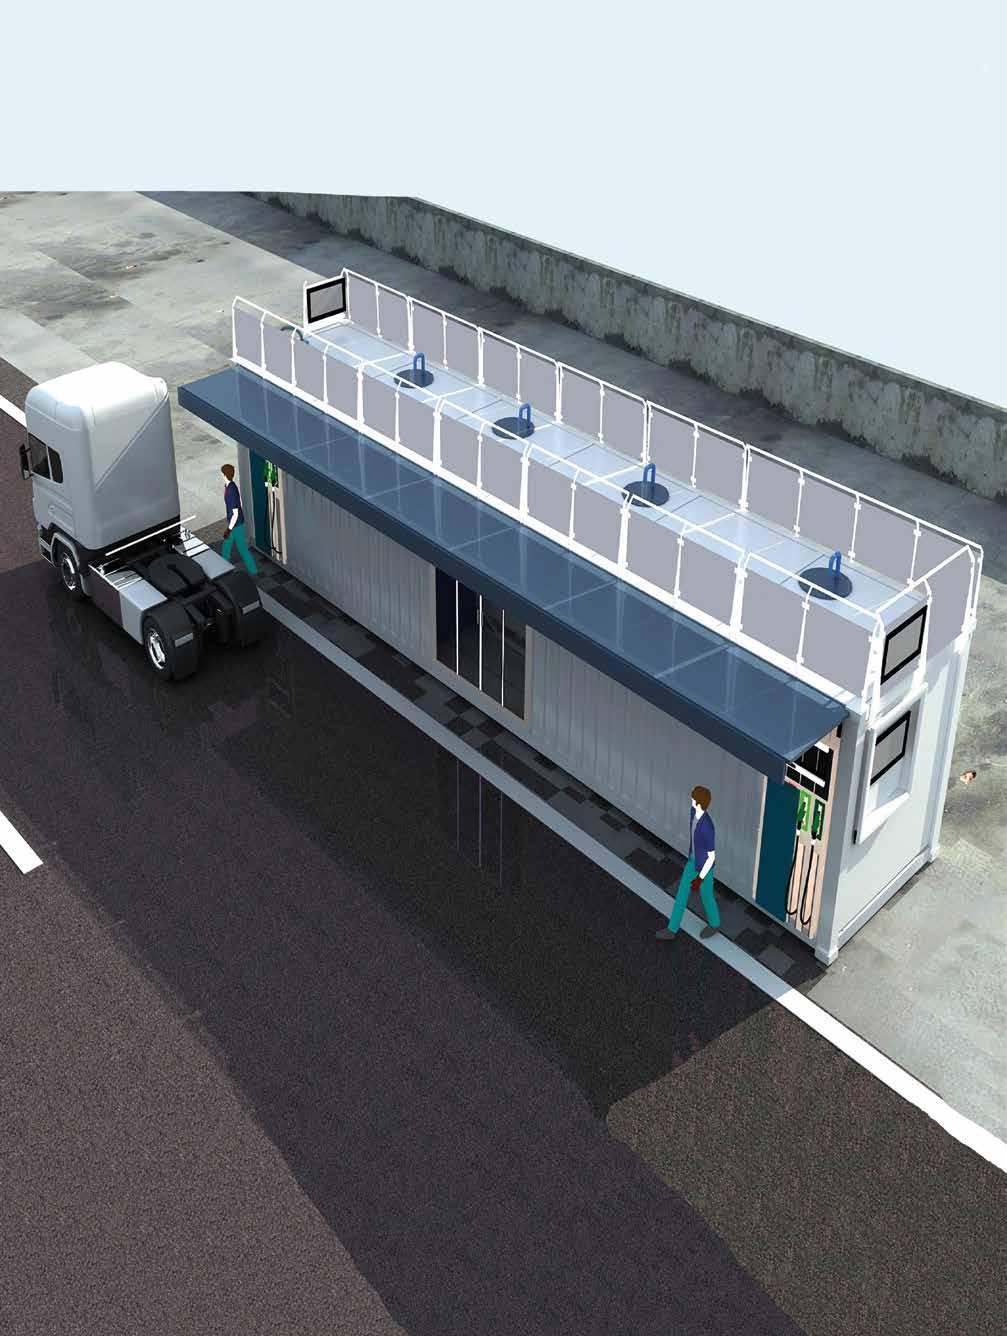 Mobil Gaz İstasyonları (Mobile Gas Stations) 40 FEET Mobil Akaryakıt İstasyonları konusunda ürettiği mobil çözümler ile son teknolojik ekipman ve donanımlarda müşterinin akaryakıt istasyonundan